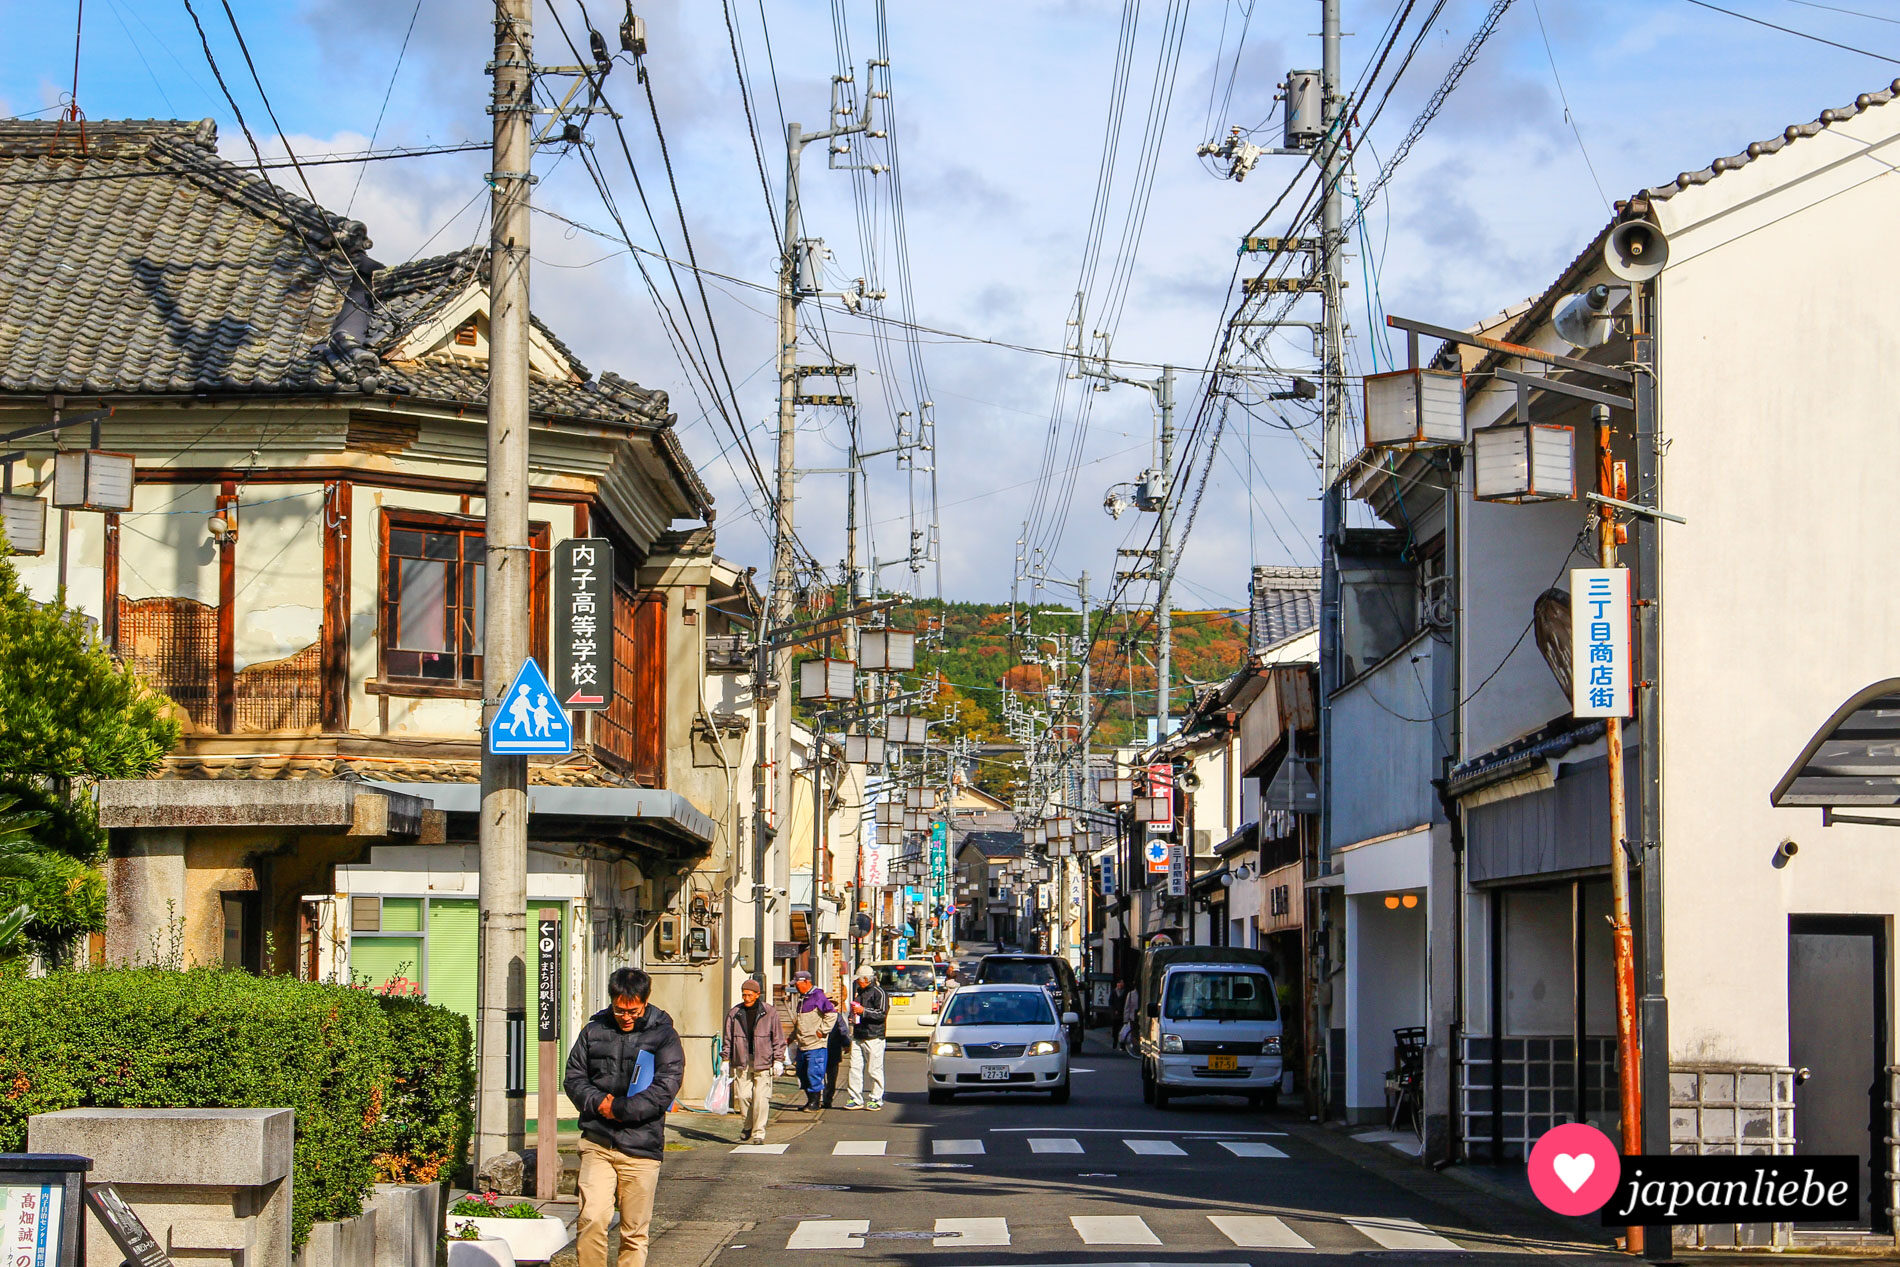 In Uchiko auf Shikoku dienen die Strommasten zeitgleich als Halterungen für die hübschen Straßenlaternen.